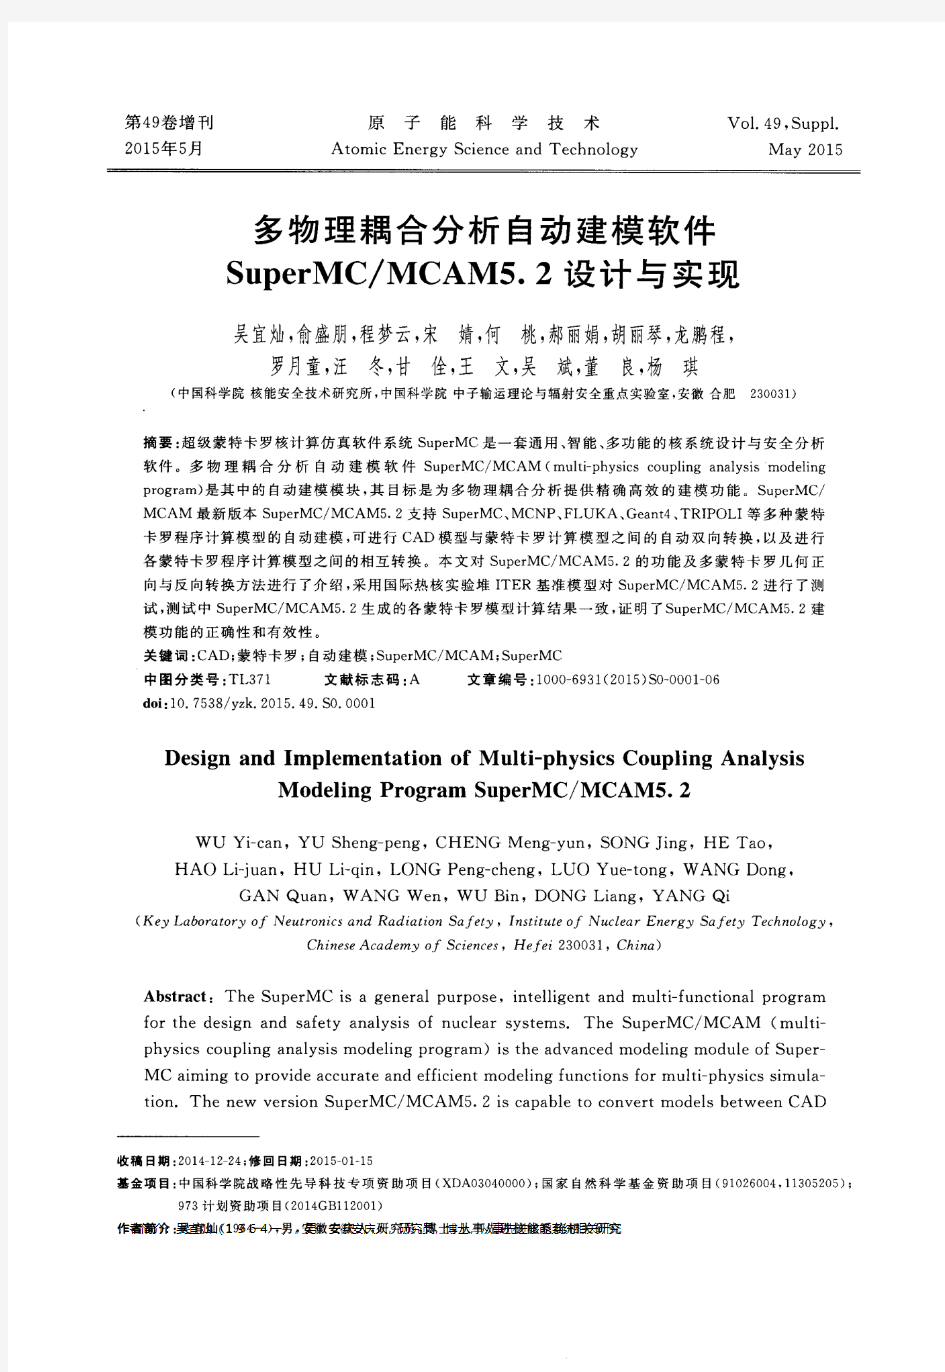 多物理耦合分析自动建模软件SuperMC／MCAM5.2设计与实现